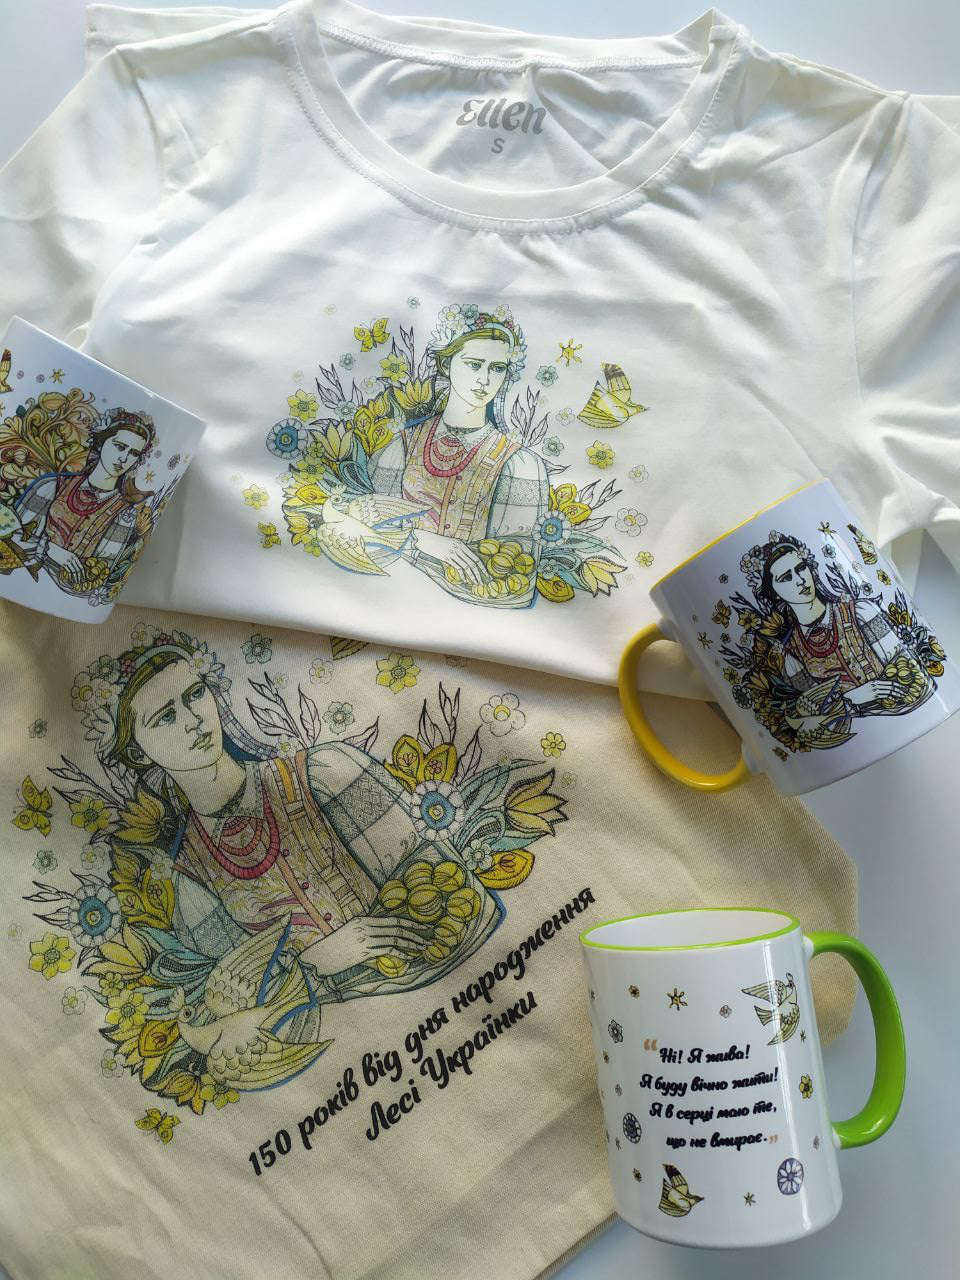 Екоторби, футболки, чашки: у Луцьку виготовили сувеніри до дня народження Лесі Українки (фото)